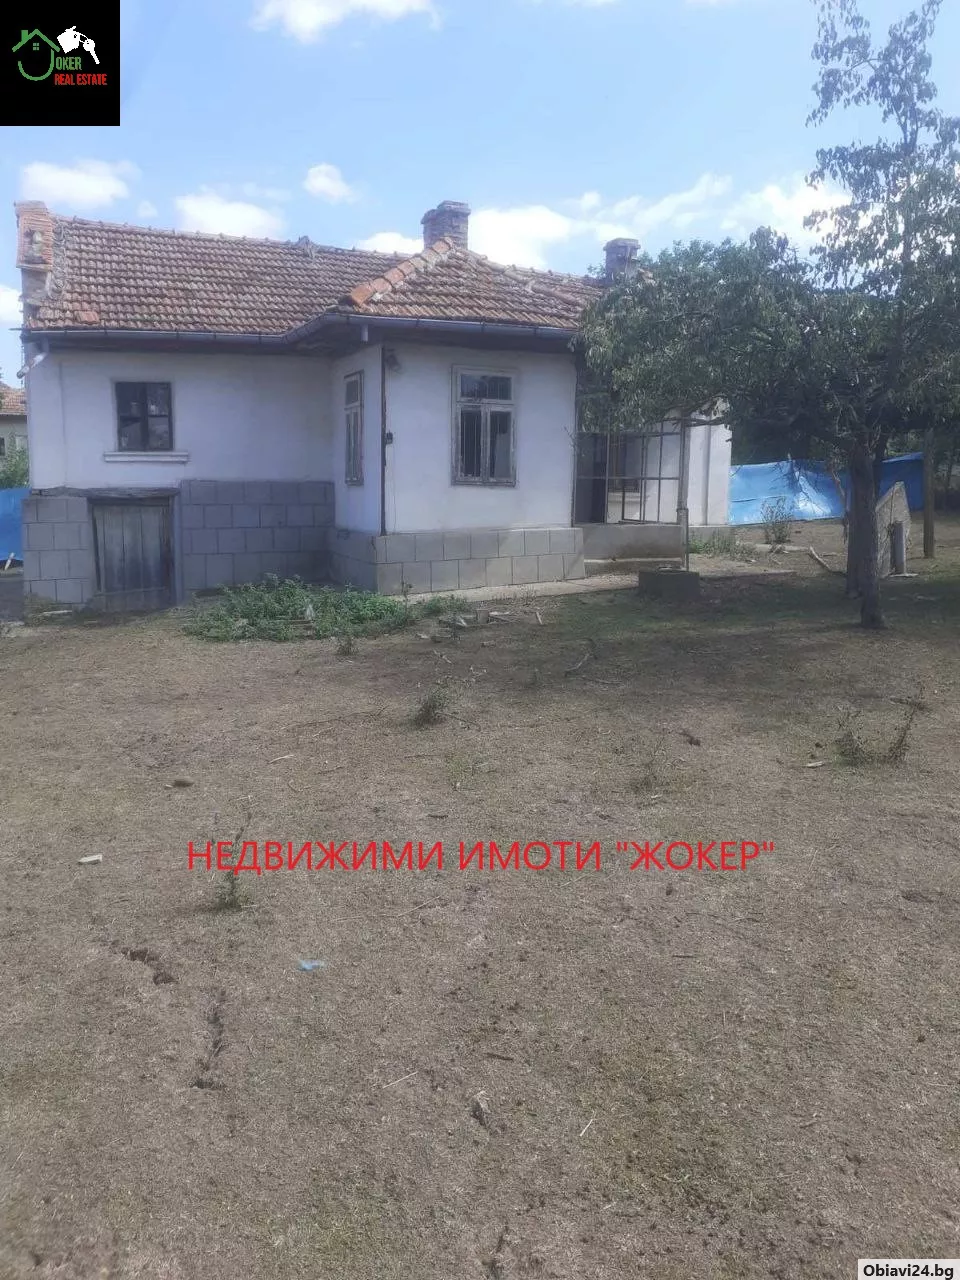 Къща с двор в село Сушица - obiavi24.bg